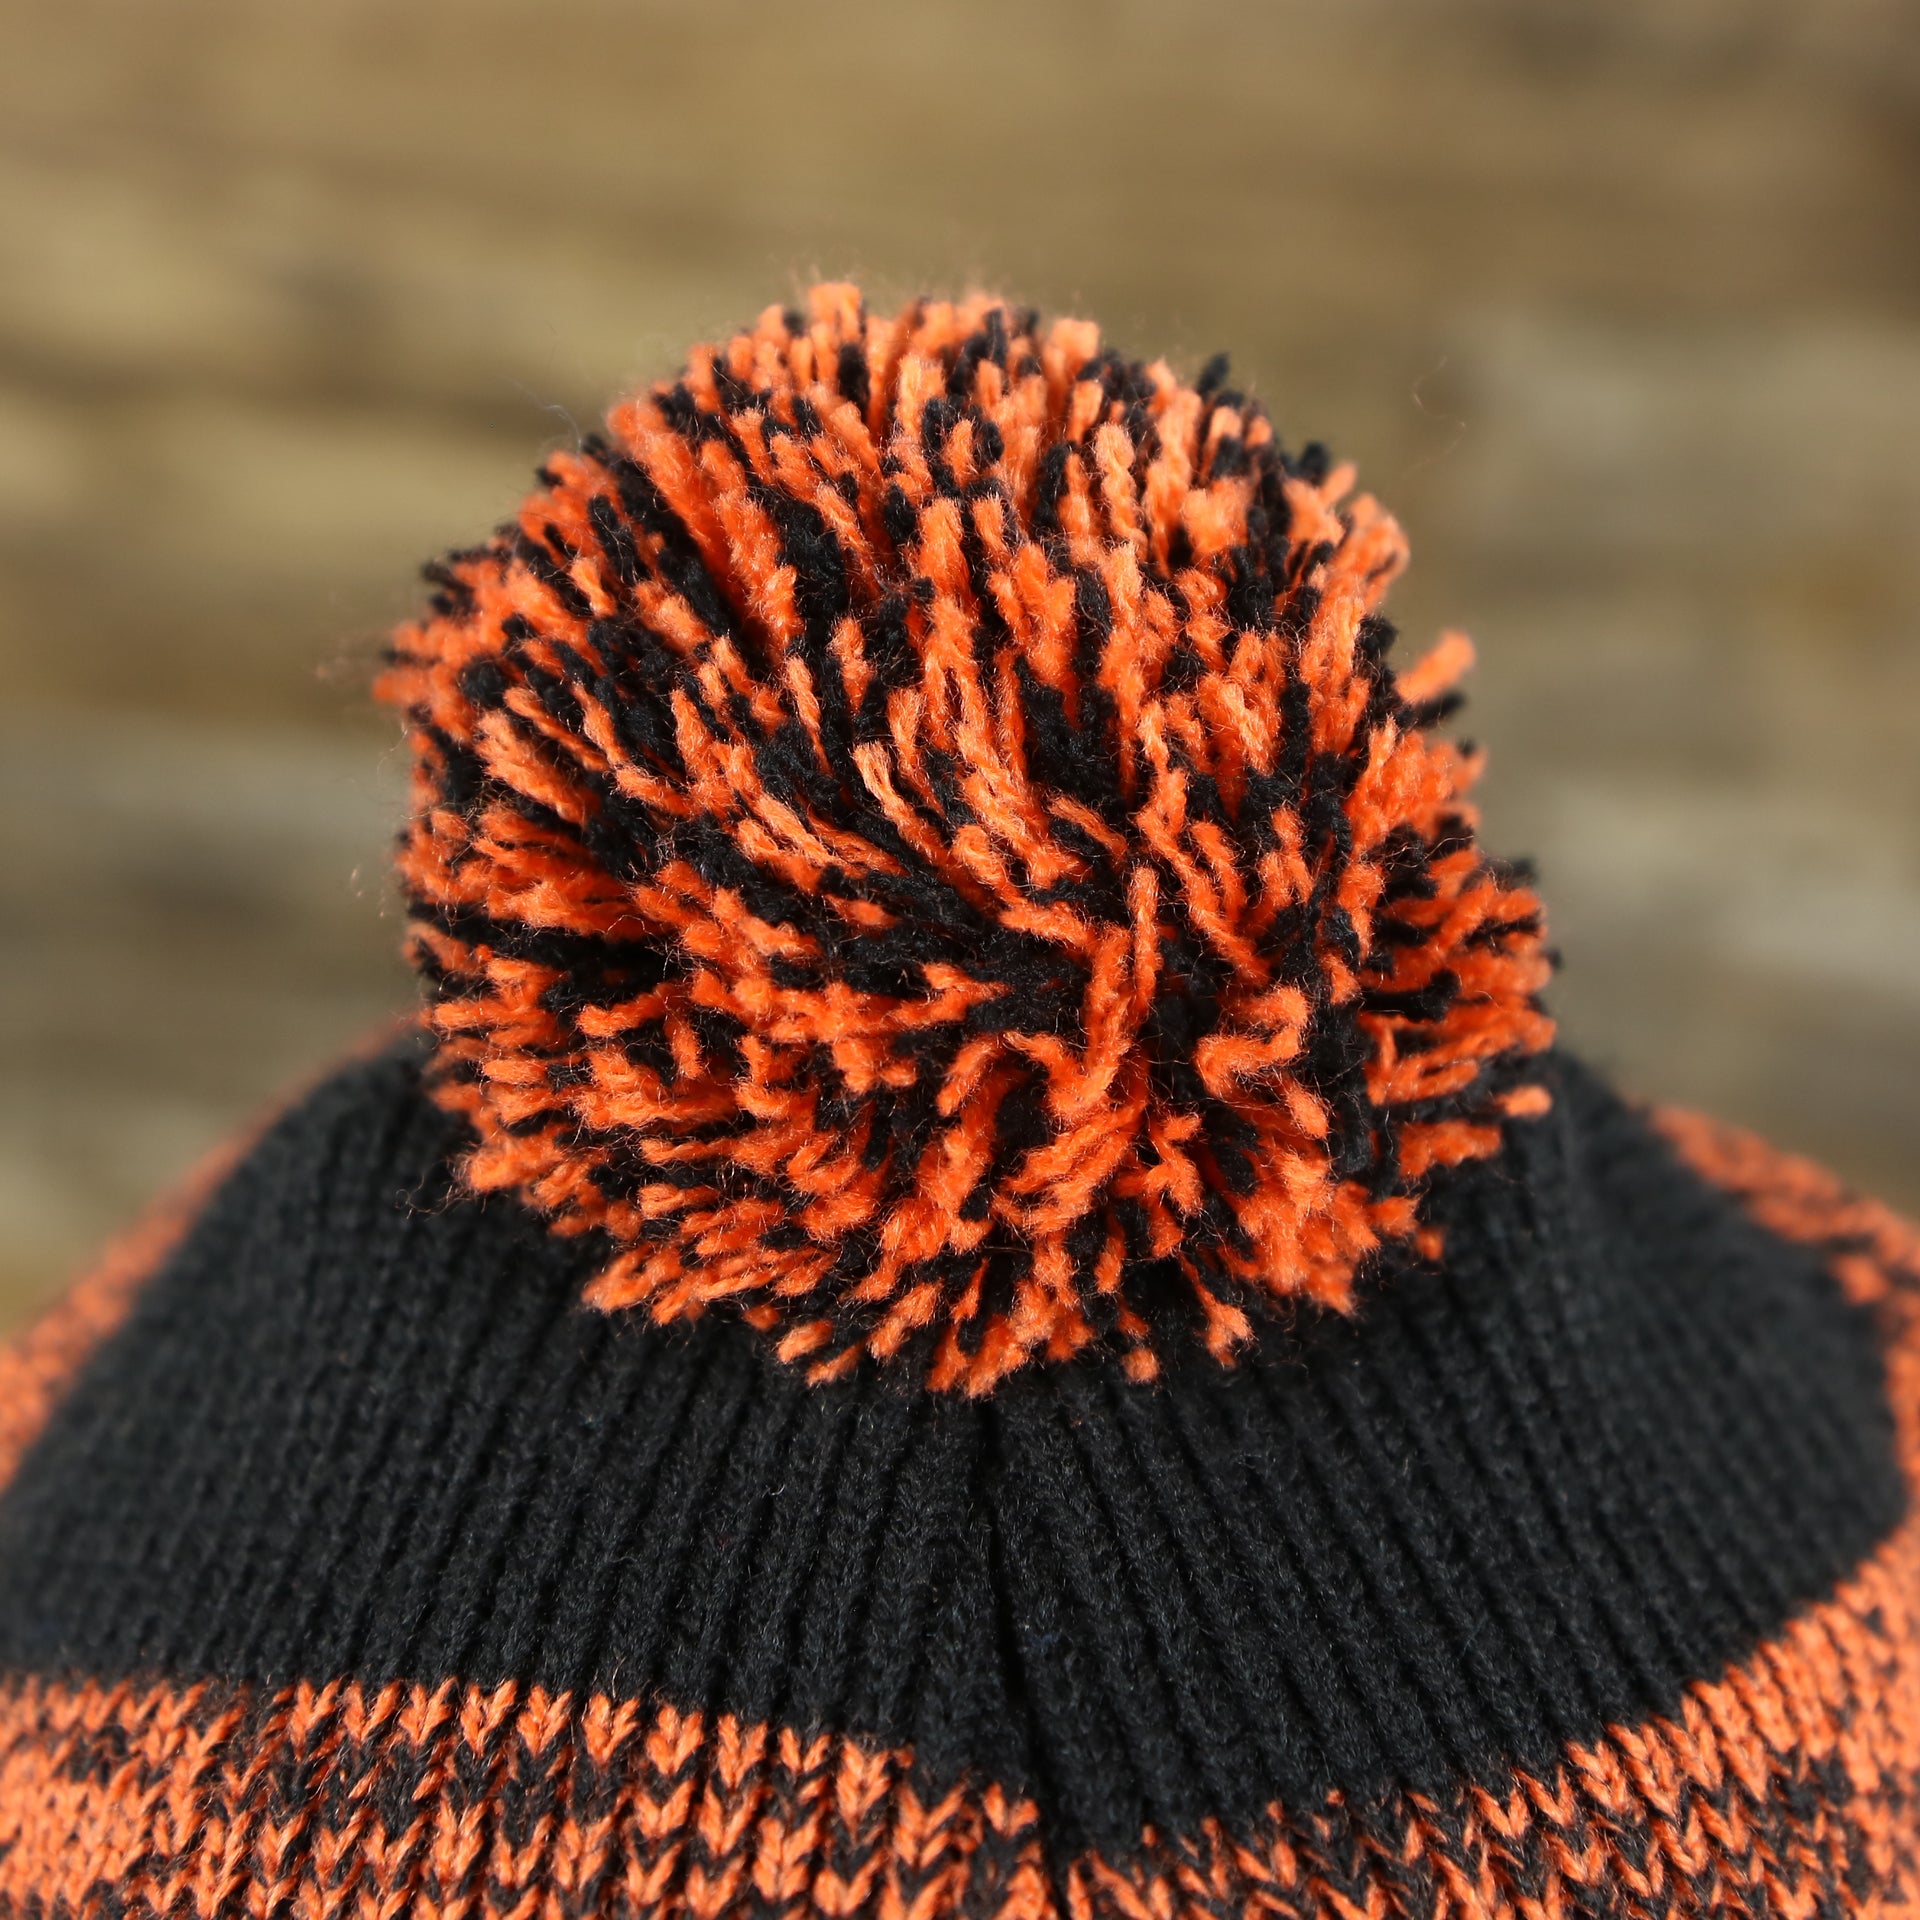 The Pom Pom on the Philadelphia Flyers Static Knit Cuffed Winter Beanie With Pom Pom | Black, Orange, And Gray Beanie